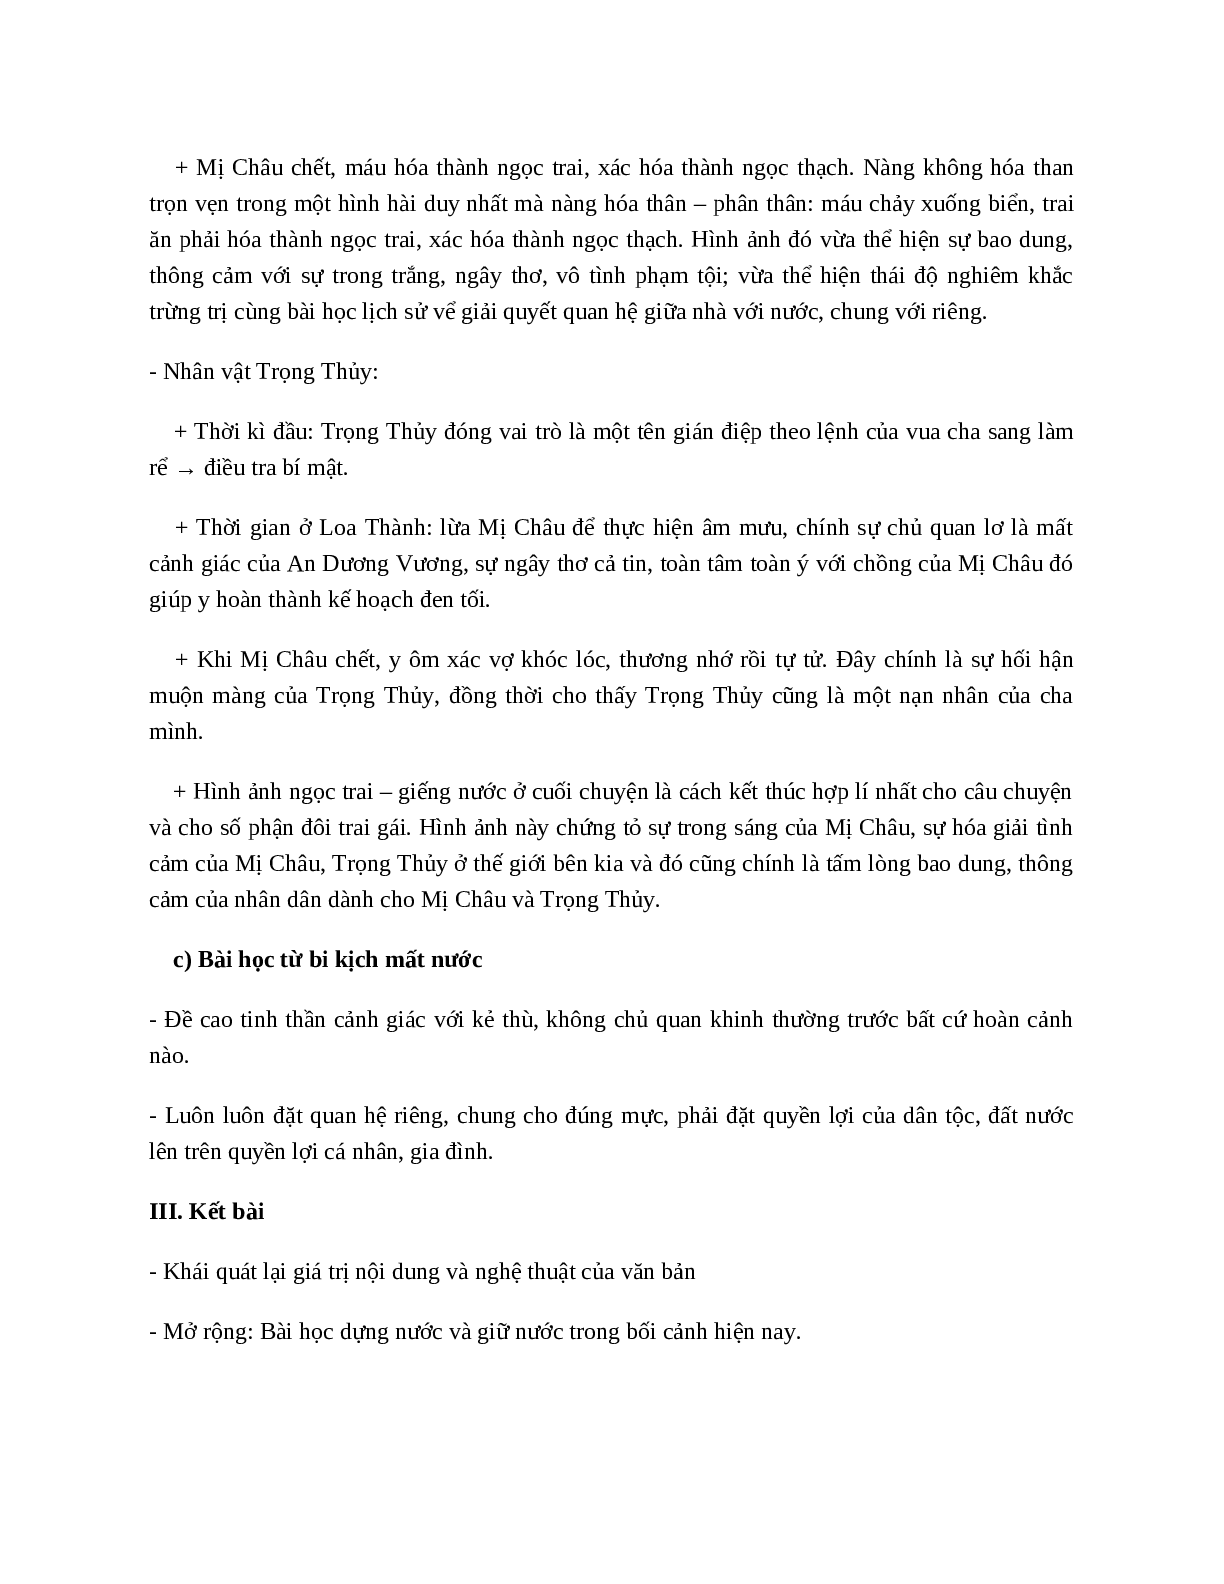 Truyện An Dương Vương và Mị Châu, Trọng Thủy - nội dung, dàn ý phân tích, bố cục, tóm tắt (trang 4)